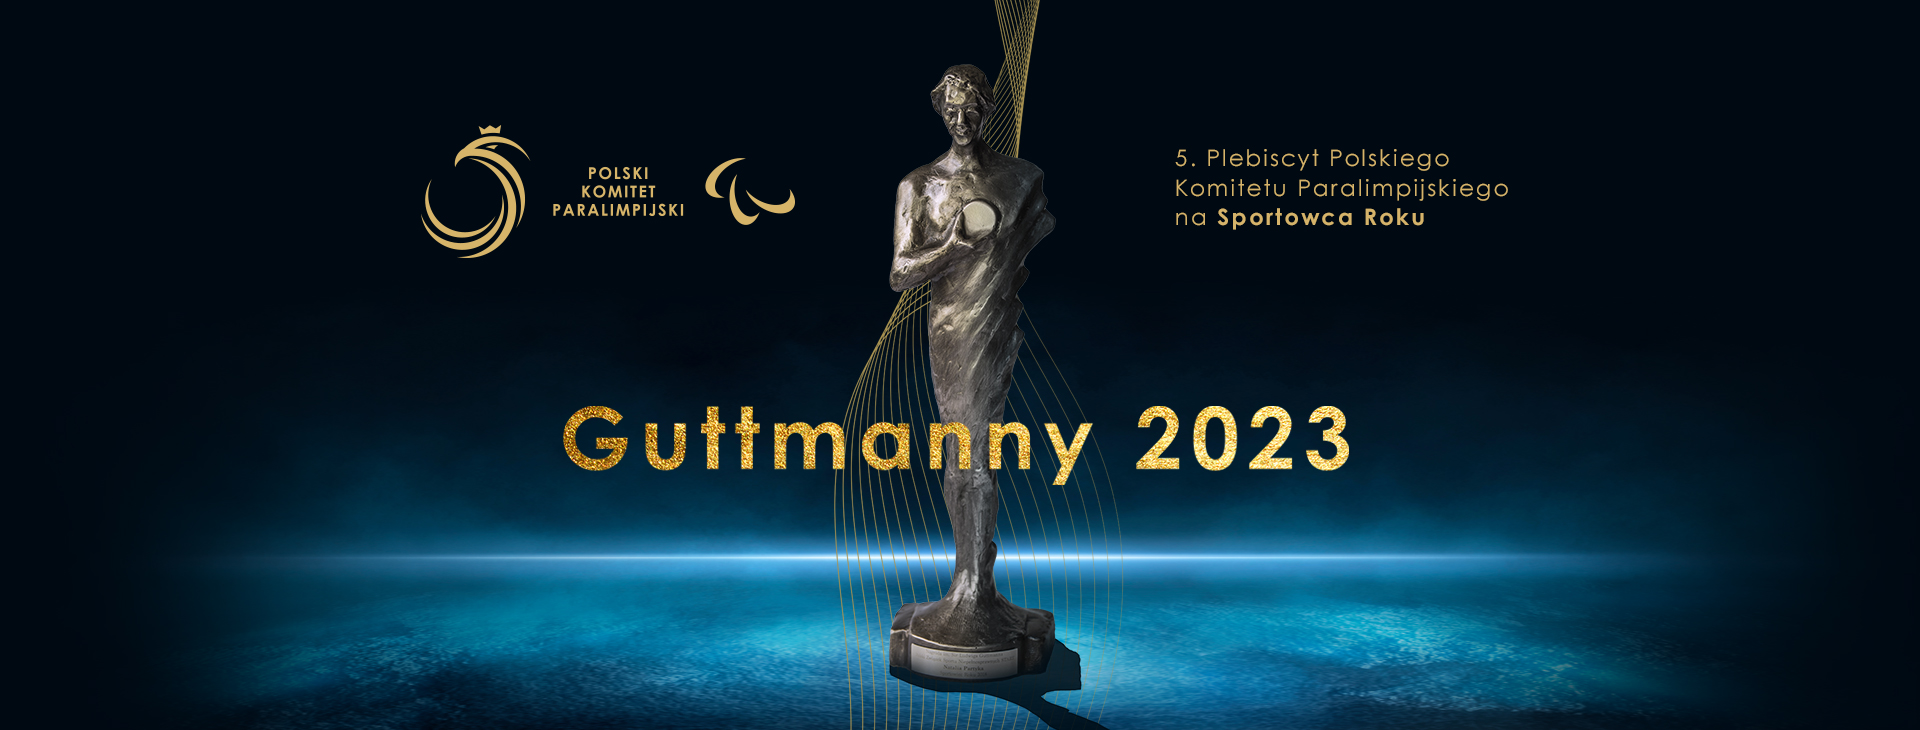 Mamy nominacje do Guttmannów 2023